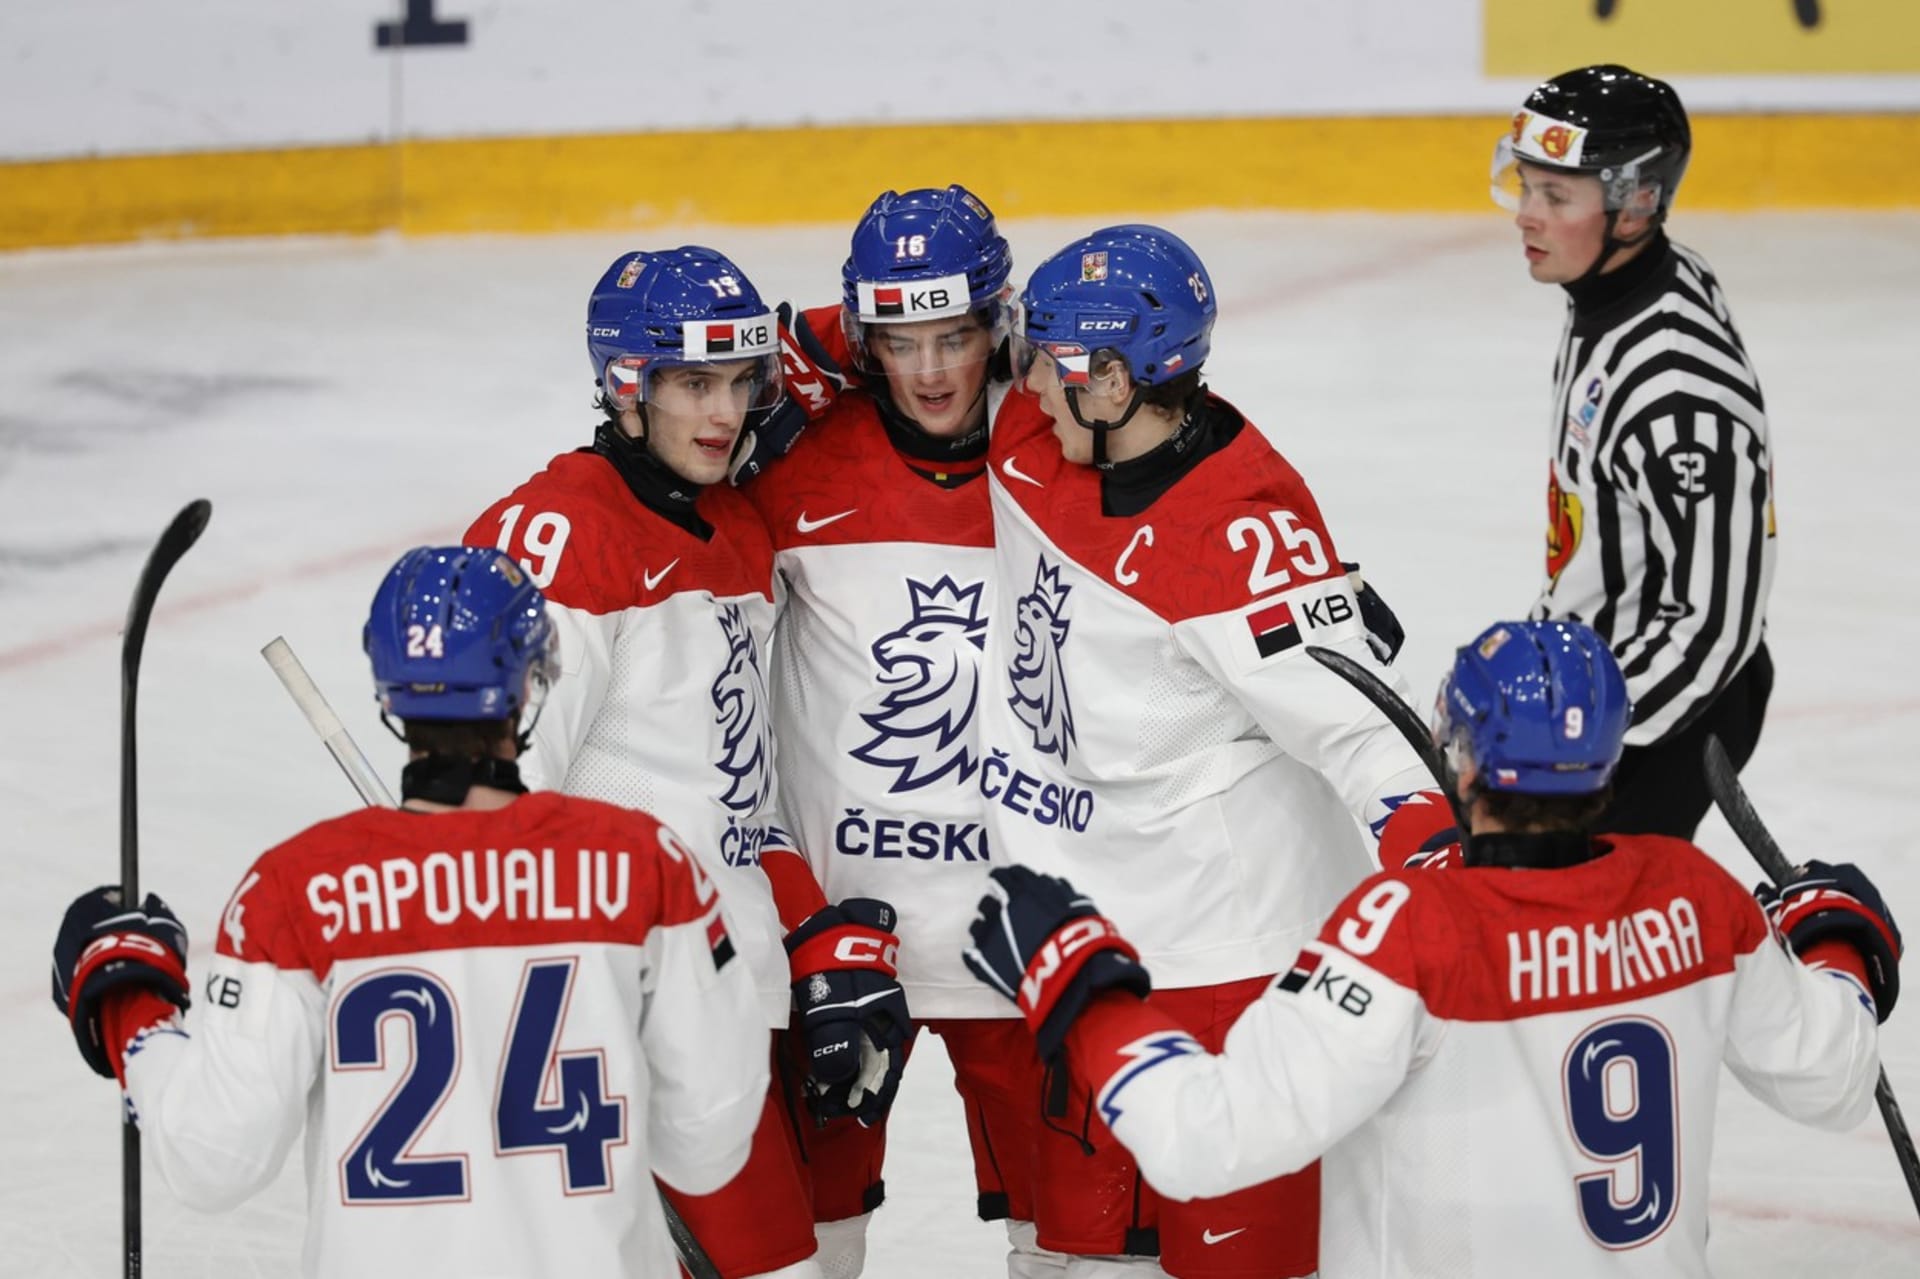 Čeští hokejisté druhé utkání na juniorském MS zvládli, porazili Nory 8:1